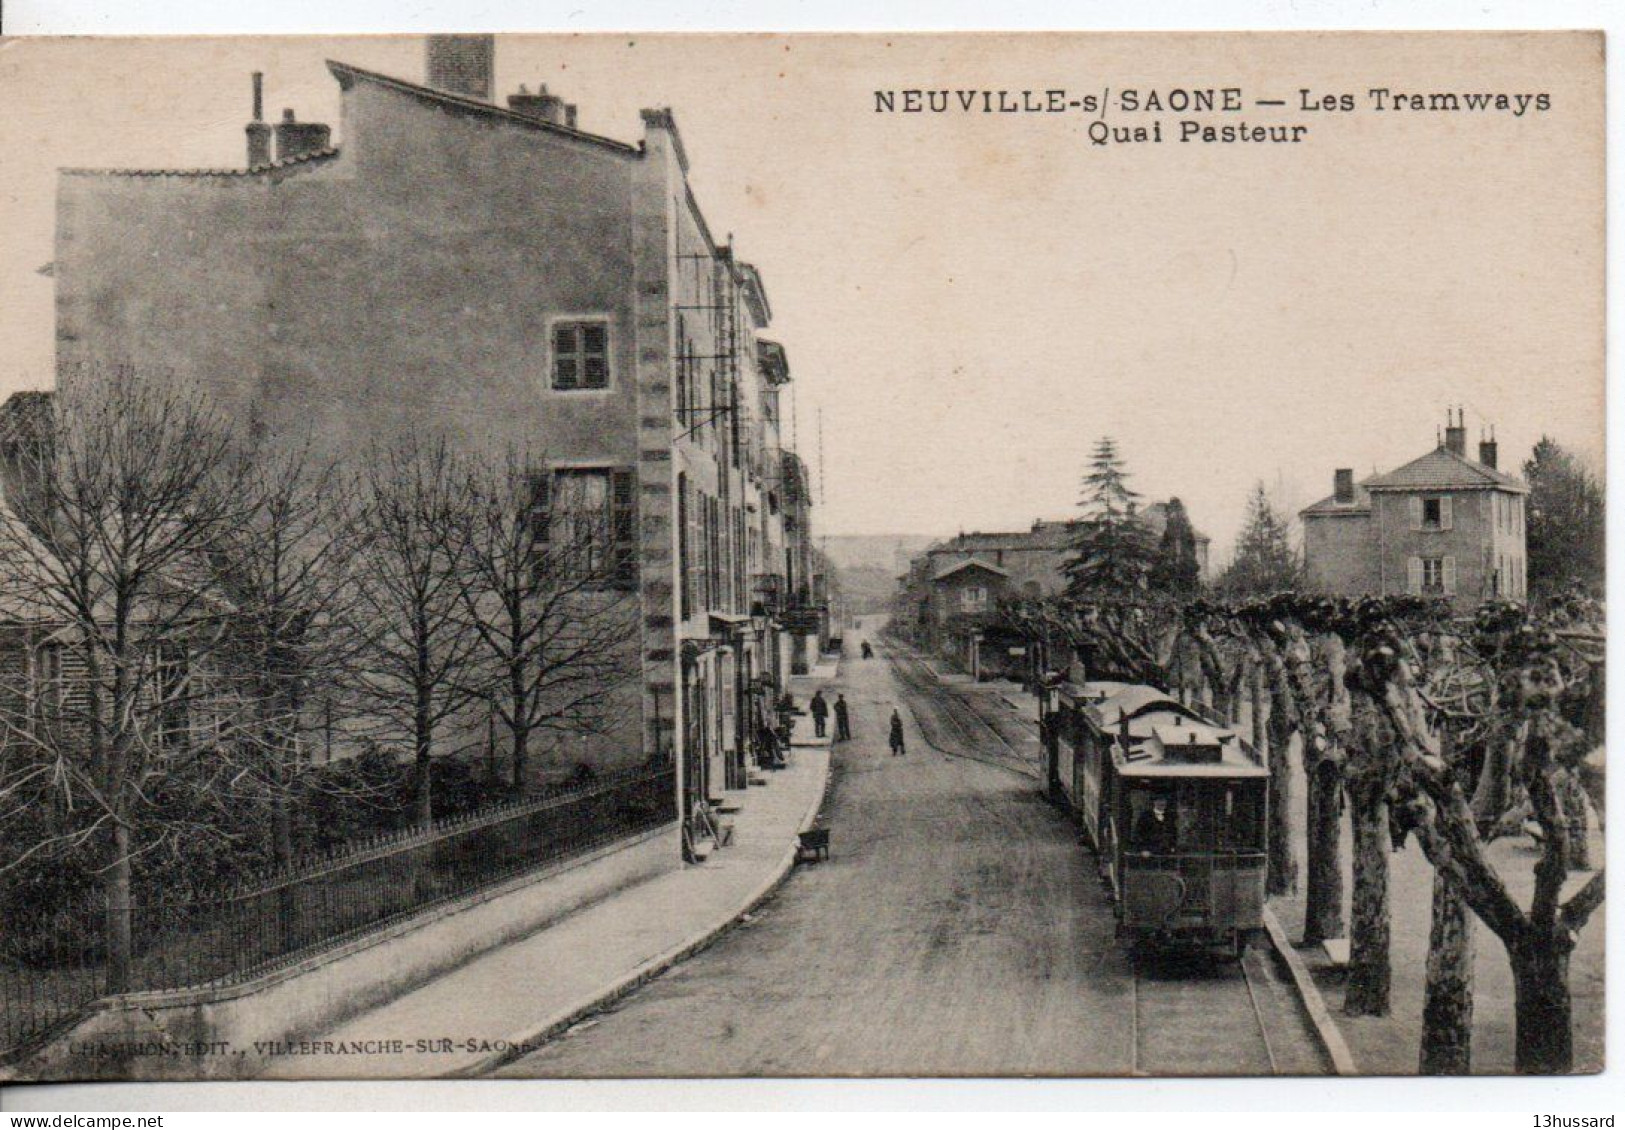 Carte Postale Ancienne Neuville Sur Saône - Les Tramways Quai Pasteur - Chemin De Fer - Neuville Sur Saone